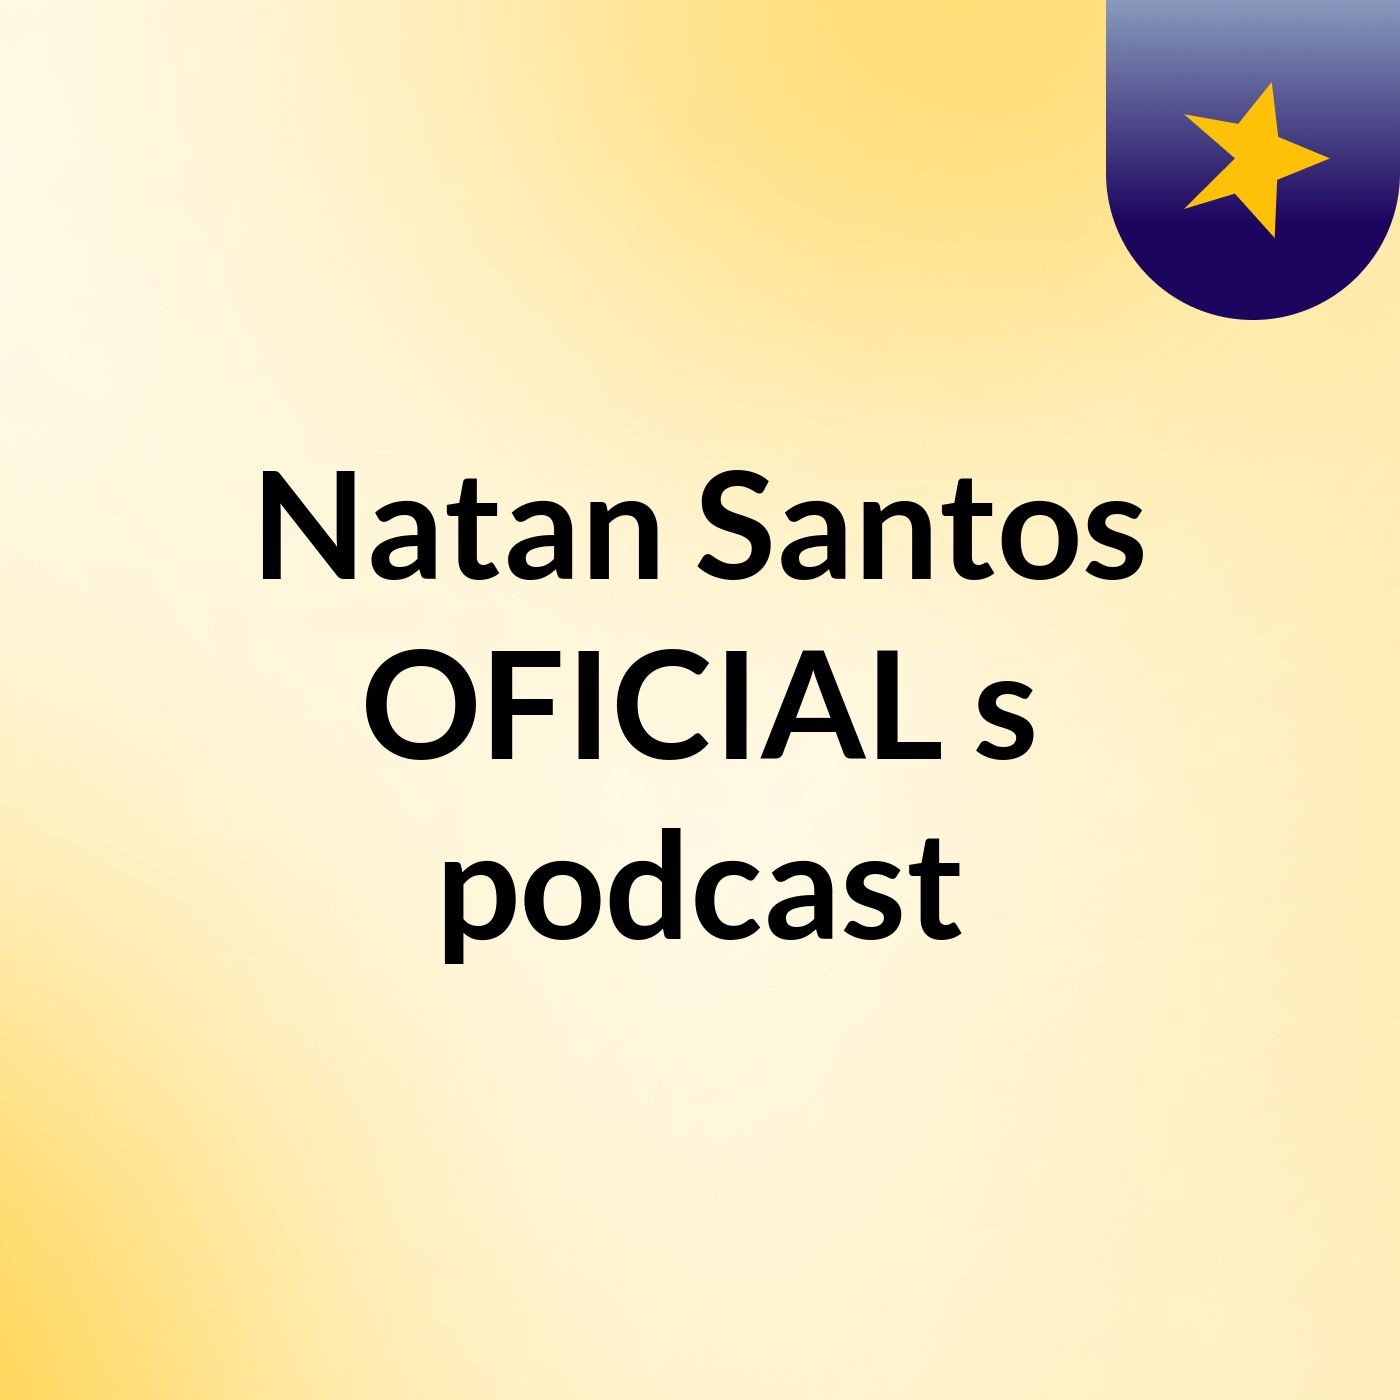 Natan Santos OFICIAL's podcast